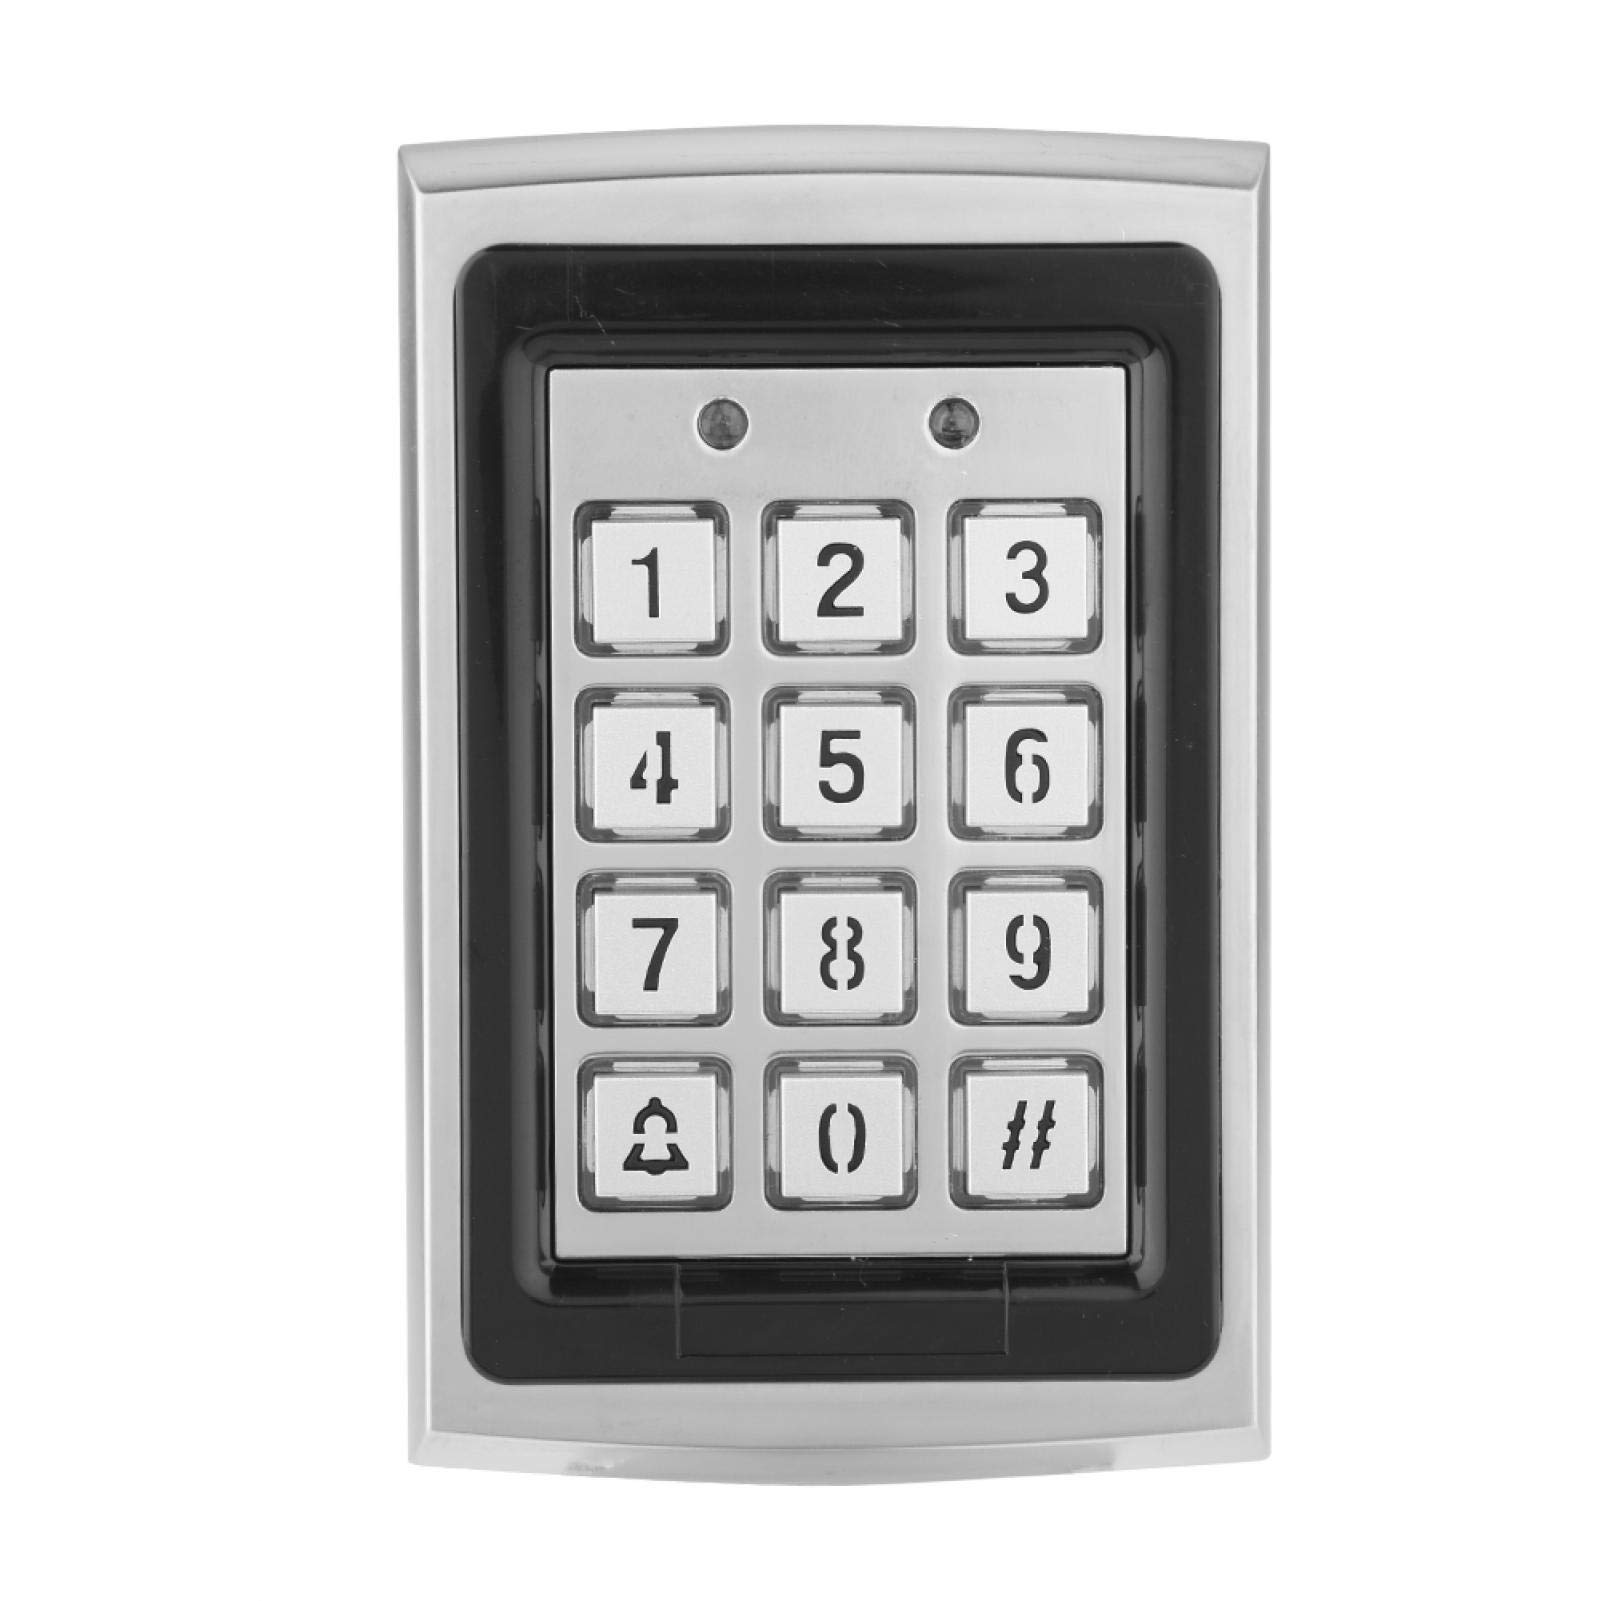 Alupre Access Controller, RFID-Karten-Türzugangs-Controller-Tastatur mit Hintergrundbeleuchtung Sicherheitstür-Zugangskontrolle Für Tür Access Control System